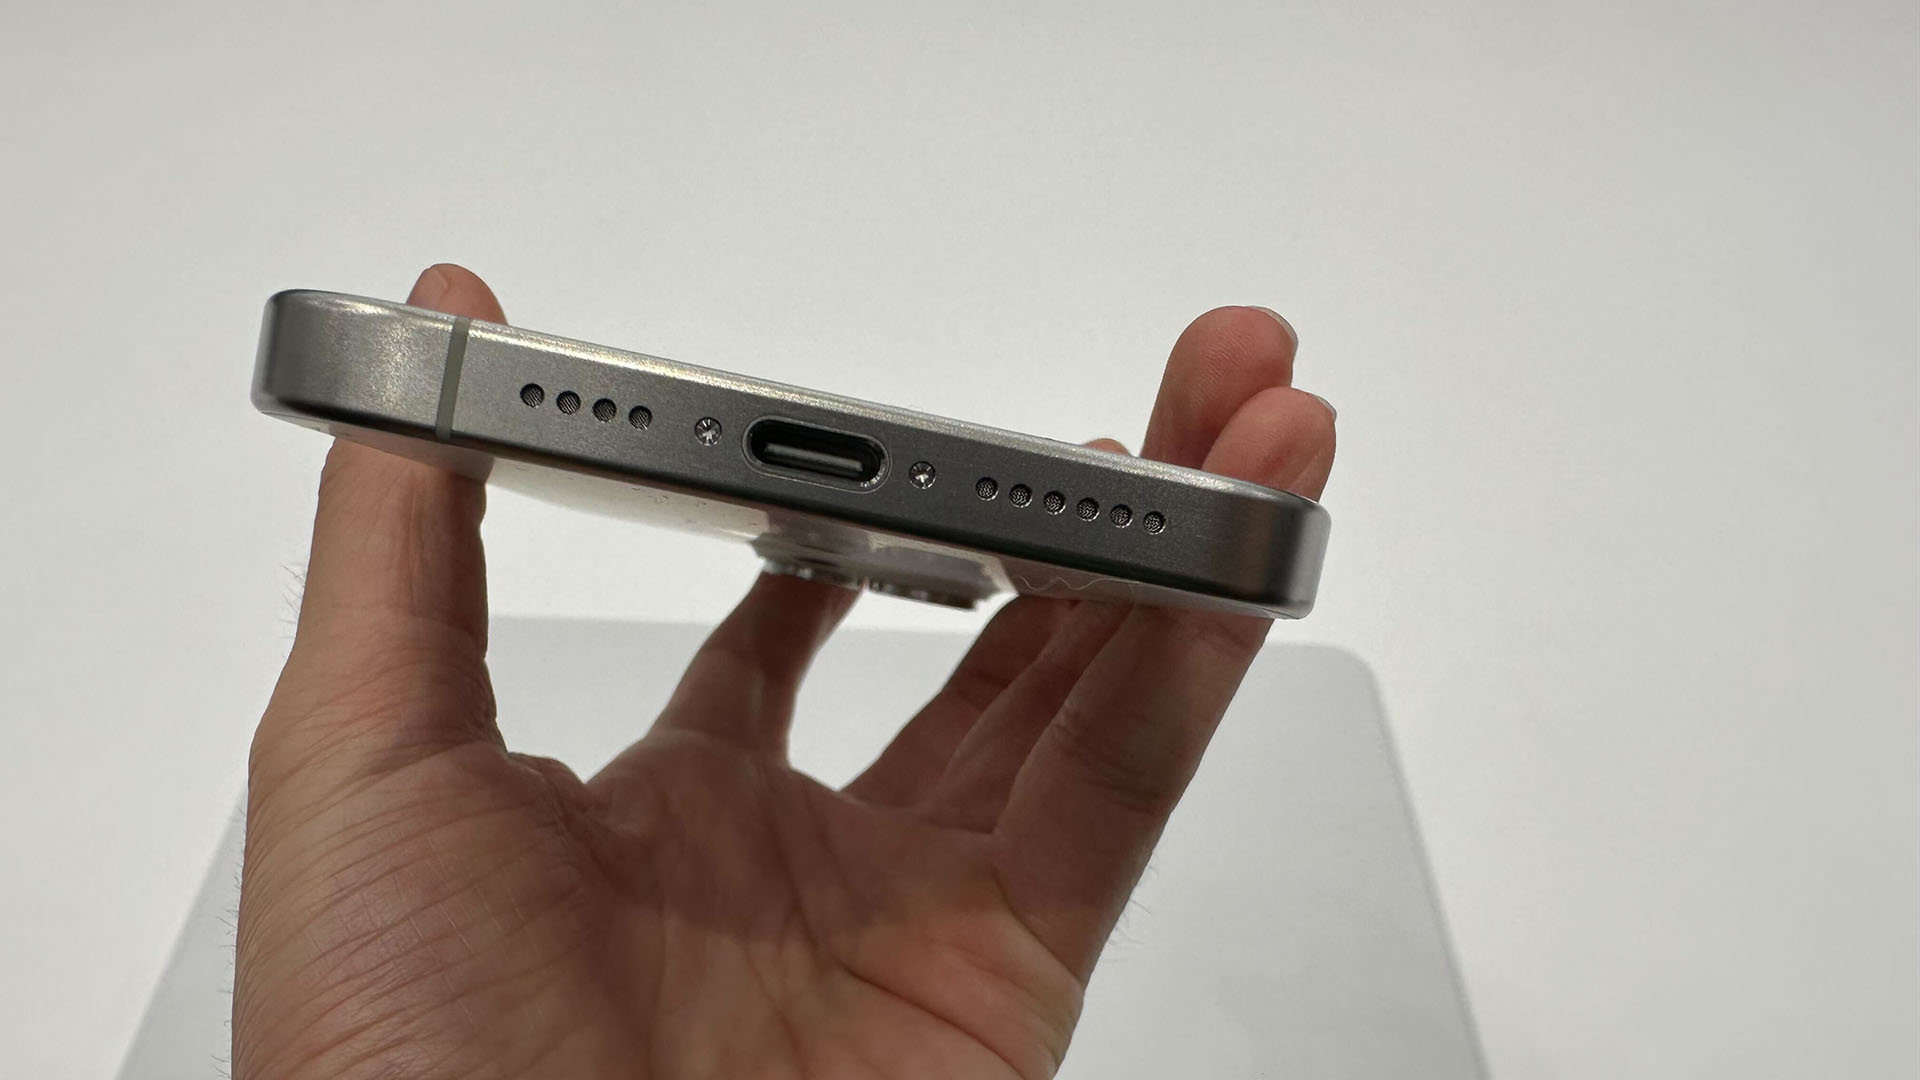 Apple confirme (enfin) que les iPhone passeront au chargeur USB-C en Europe  au moins - Le Parisien